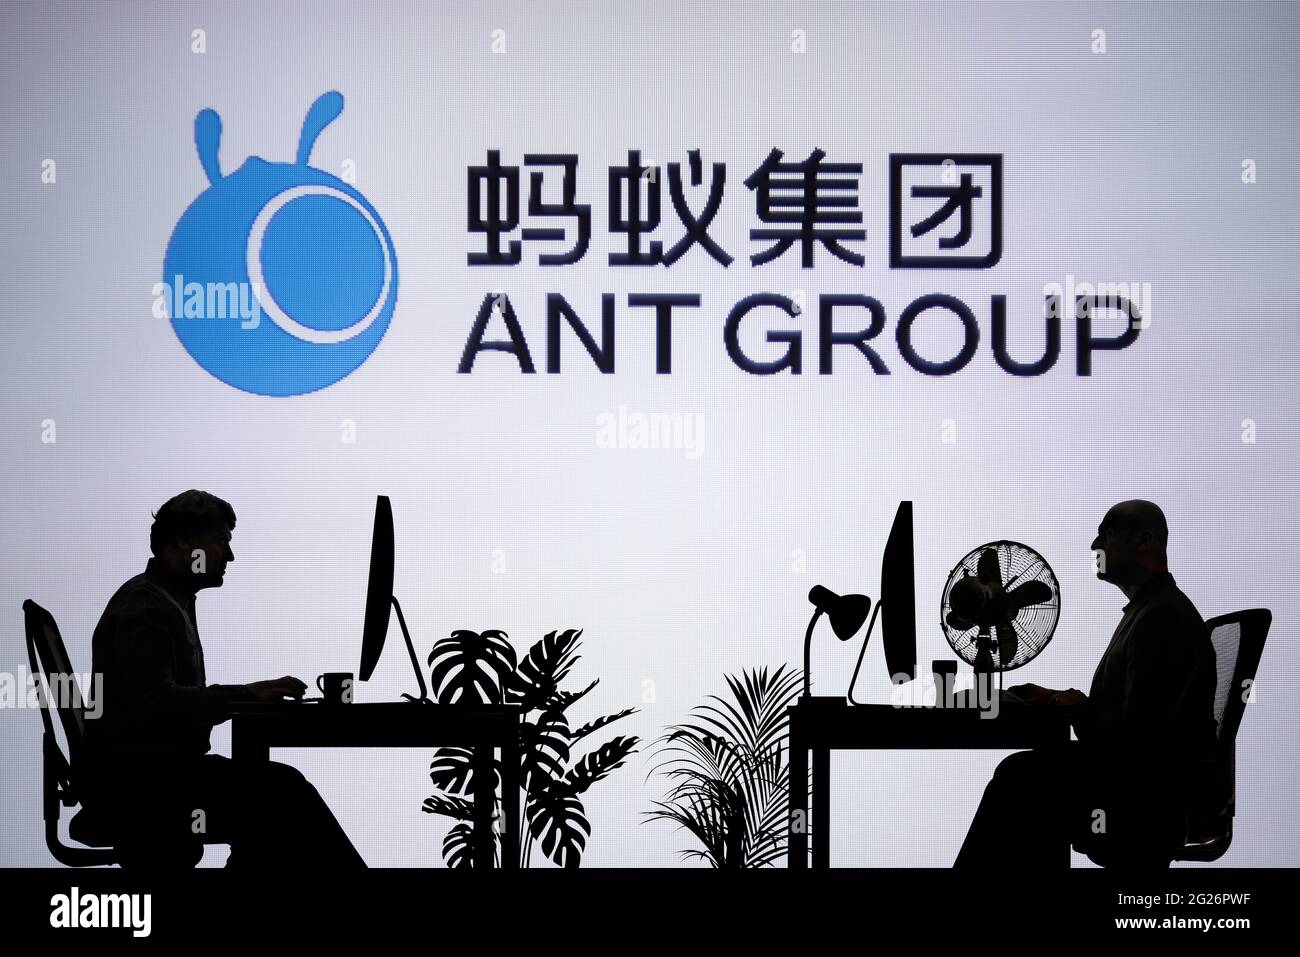 Das Logo der Ant Group ist auf einem LED-Bildschirm im Hintergrund zu sehen, während zwei silhouettierte Menschen in einer Büroumgebung arbeiten (nur zur redaktionellen Verwendung) Stockfoto